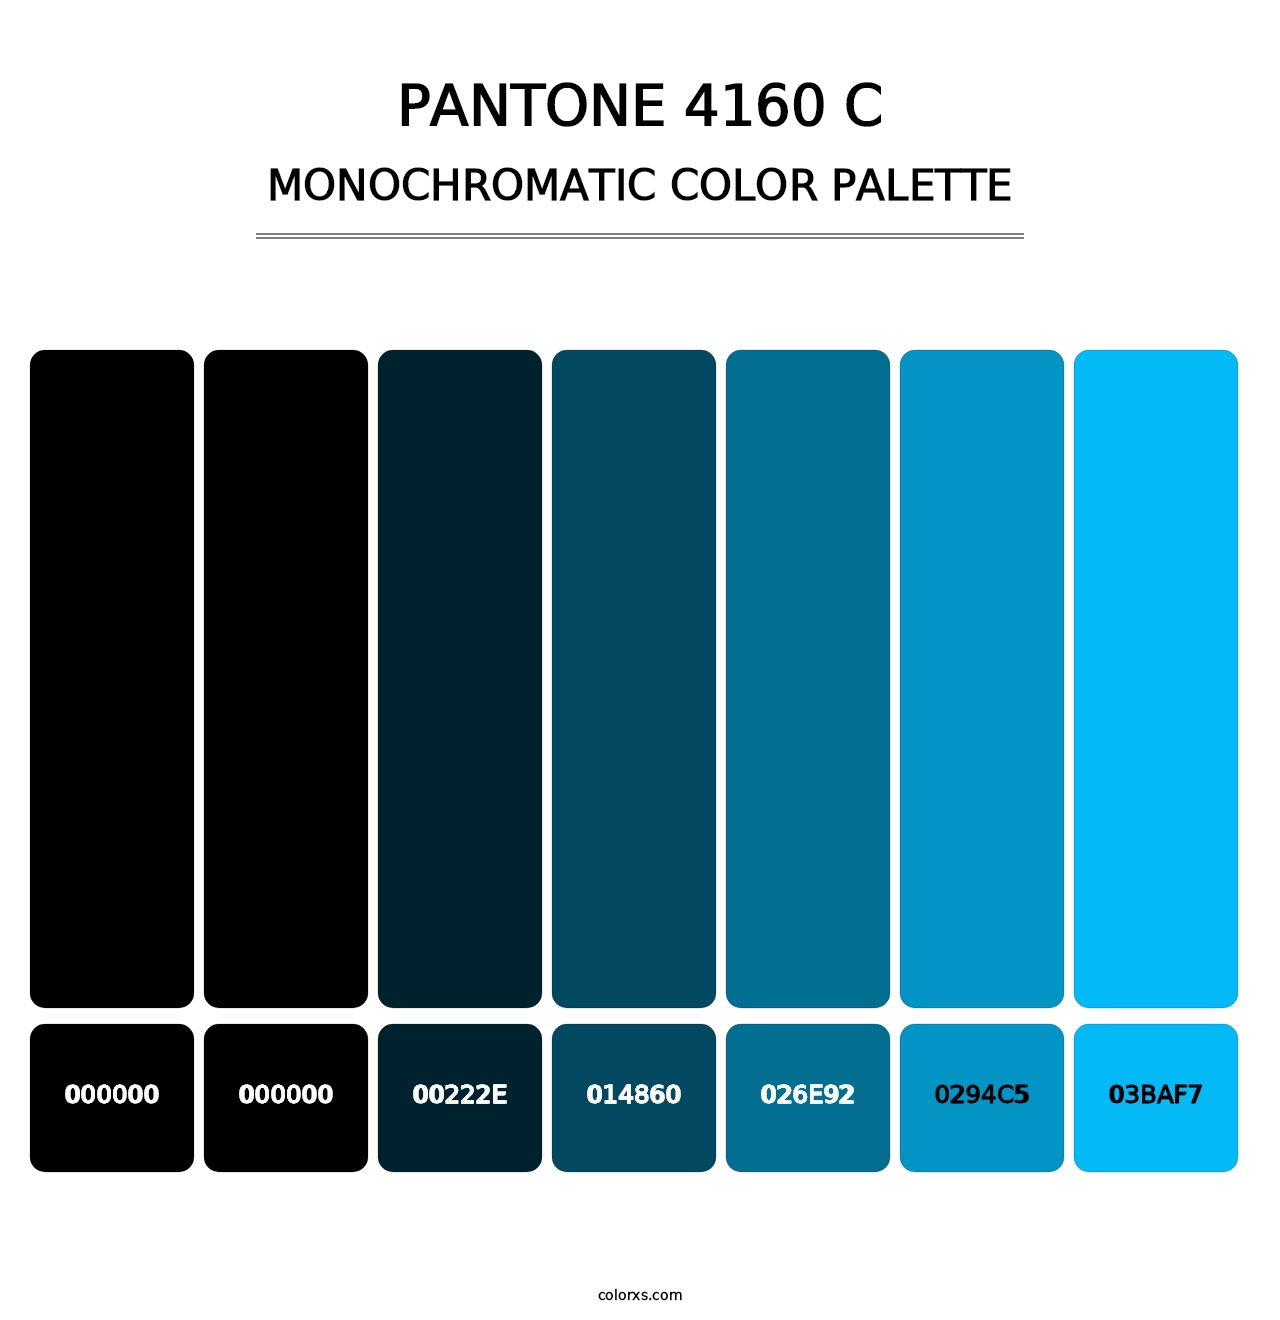 PANTONE 4160 C - Monochromatic Color Palette